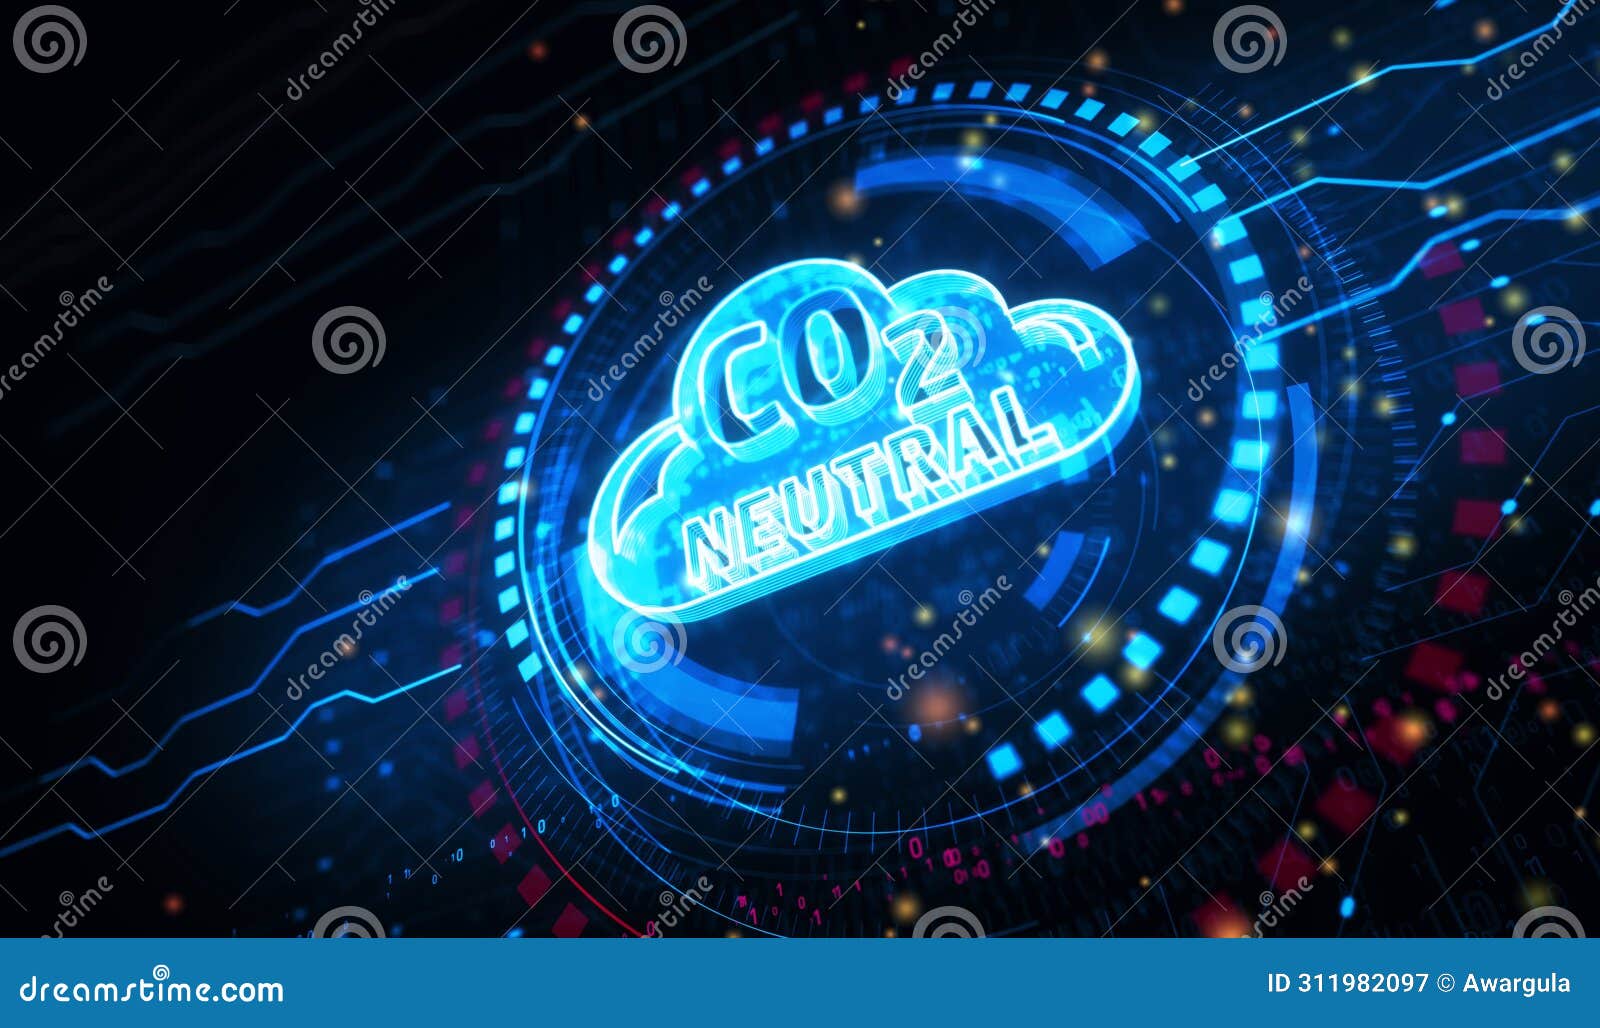 co2 neutral zero emission decarbonize  digital concept 3d 